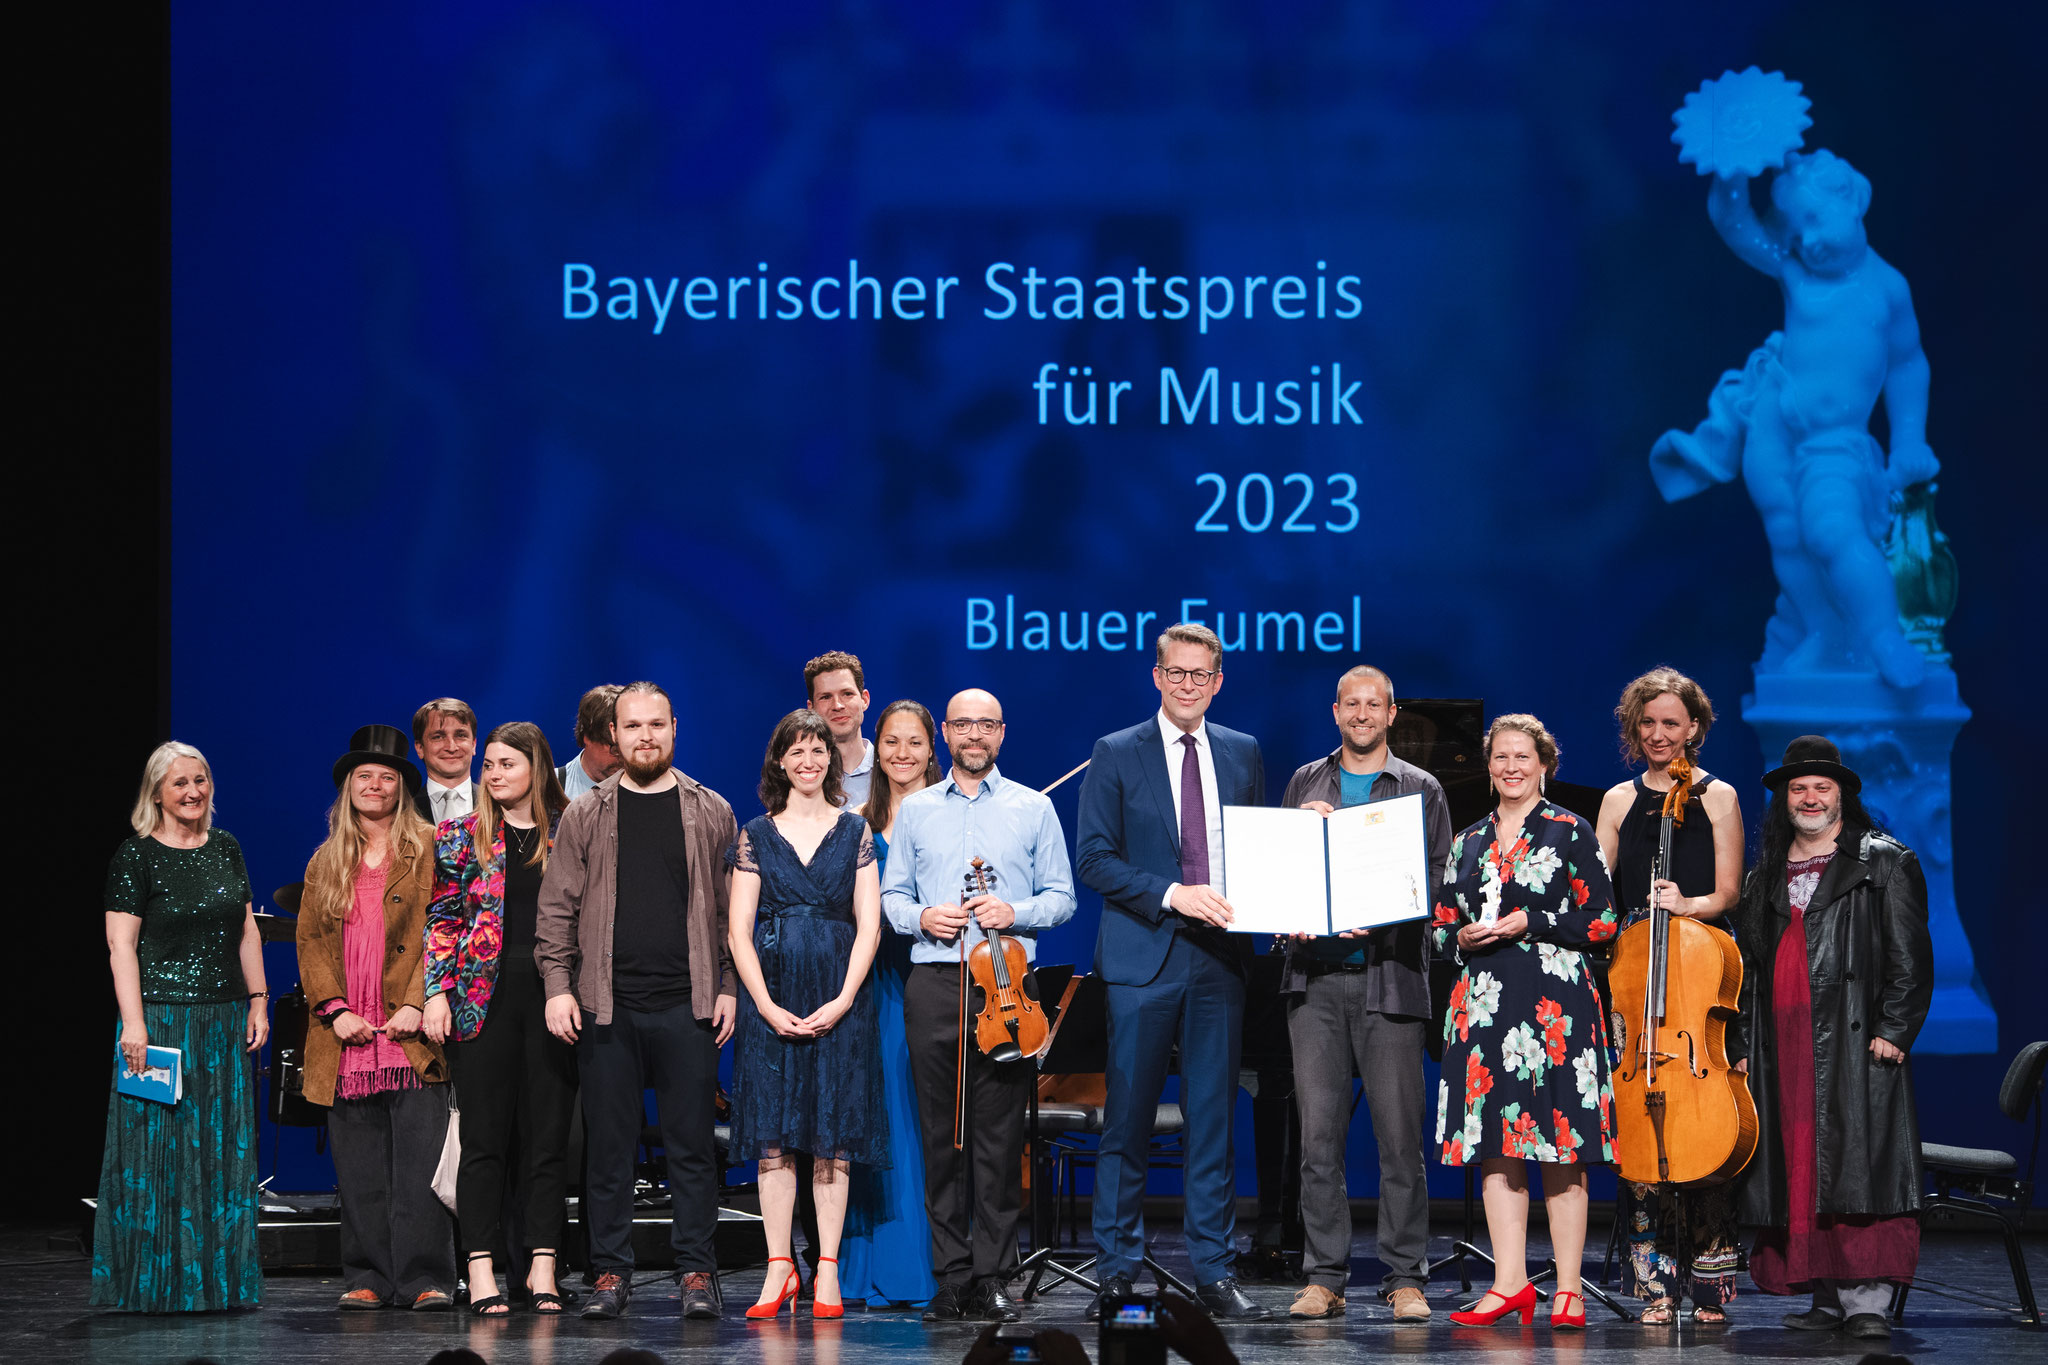 Der Blaue Eumel erhält den Bayerischen Staatspreis für Musik